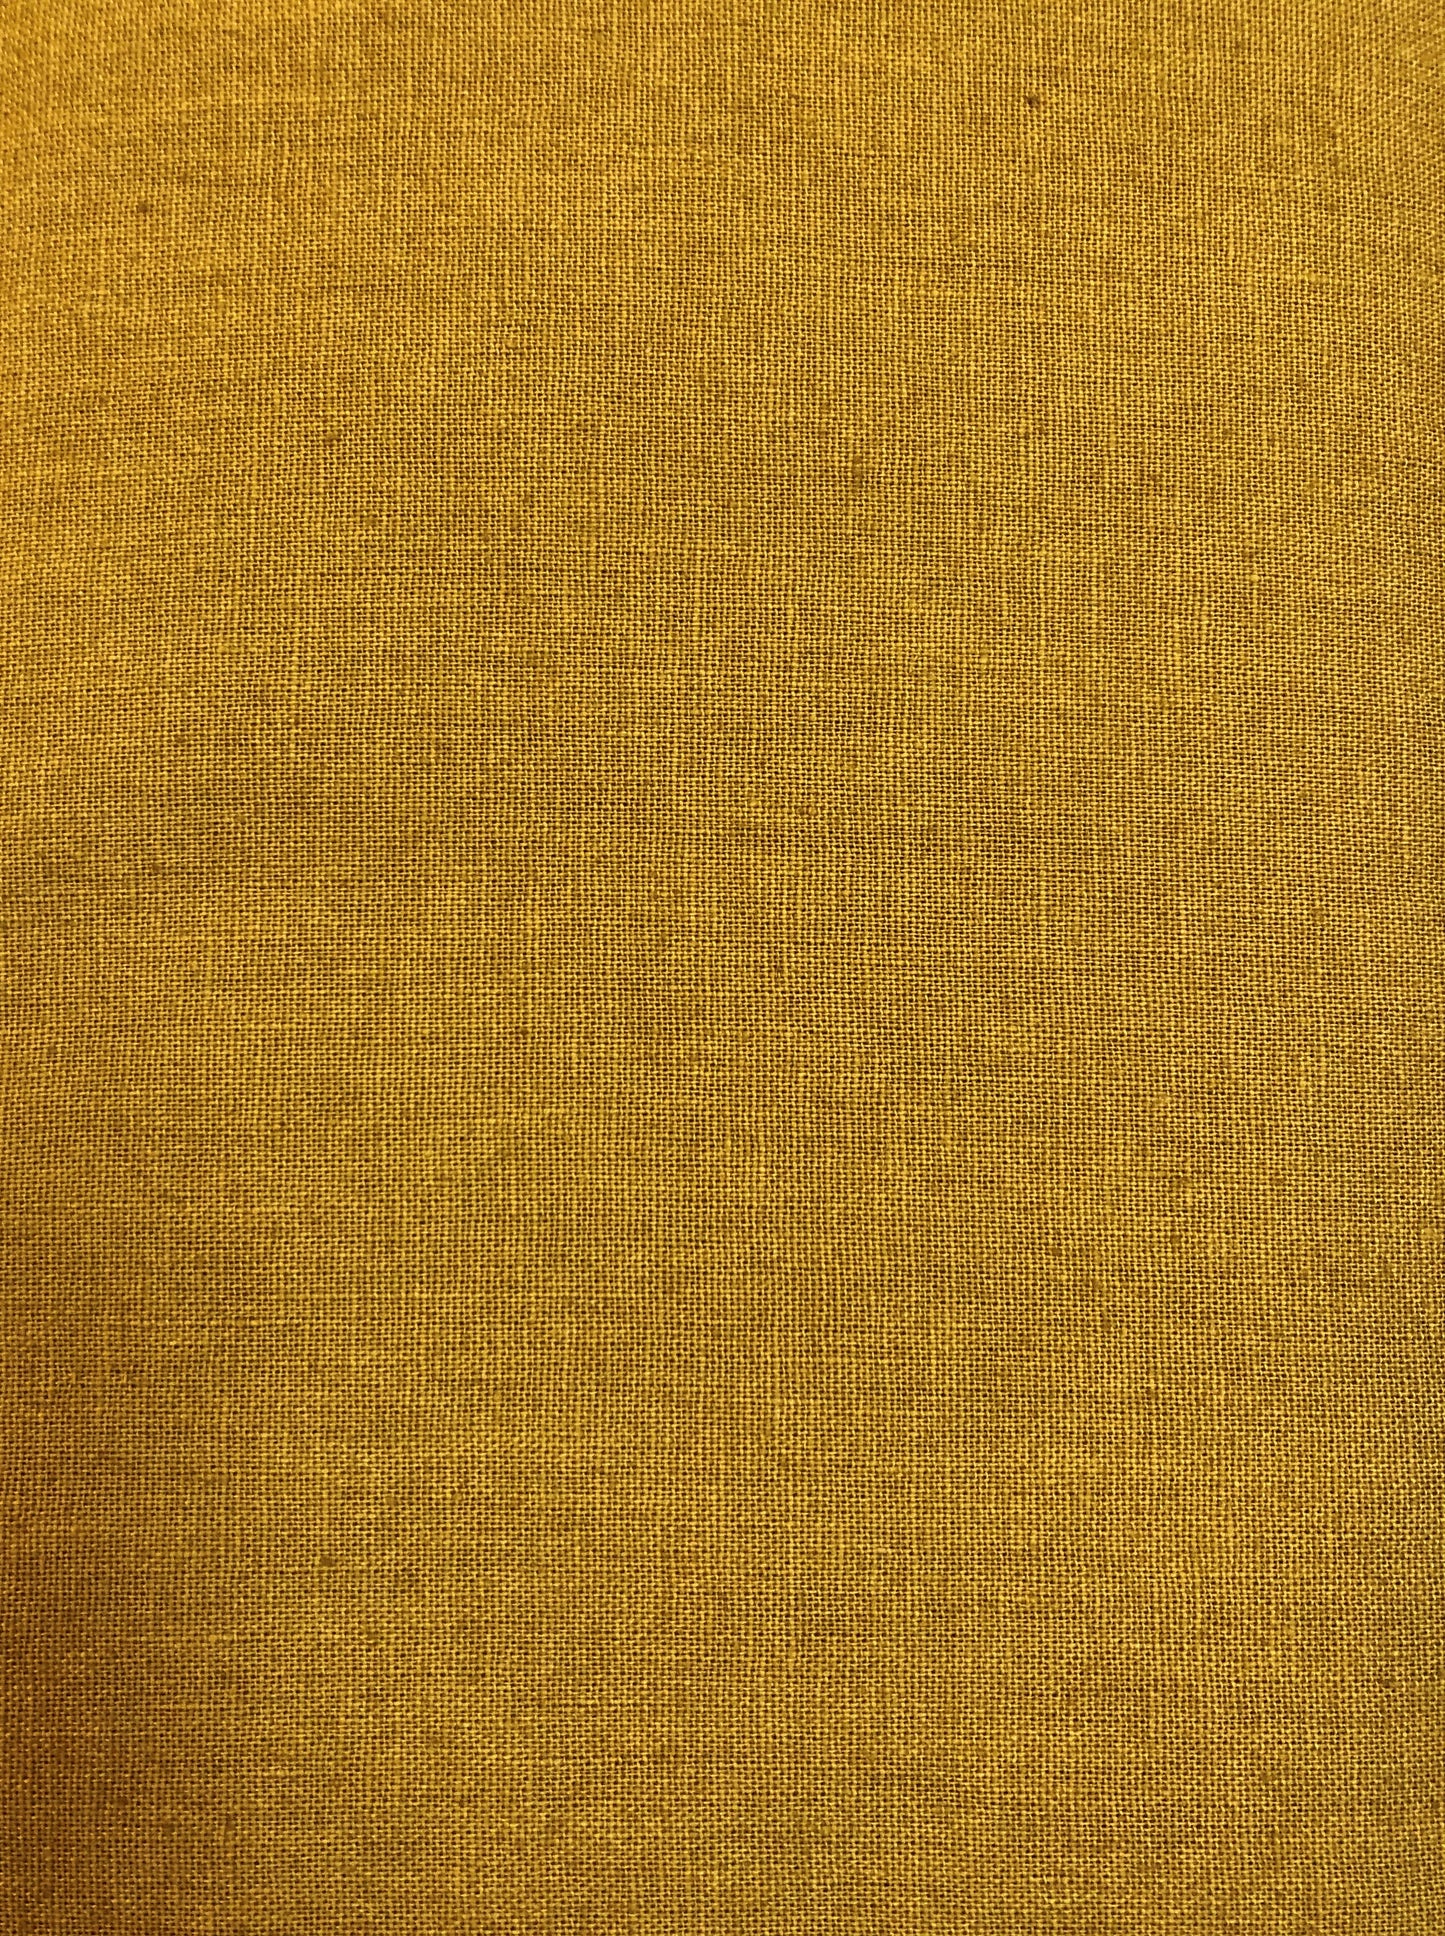 Cotton/Linen Canvas Brown